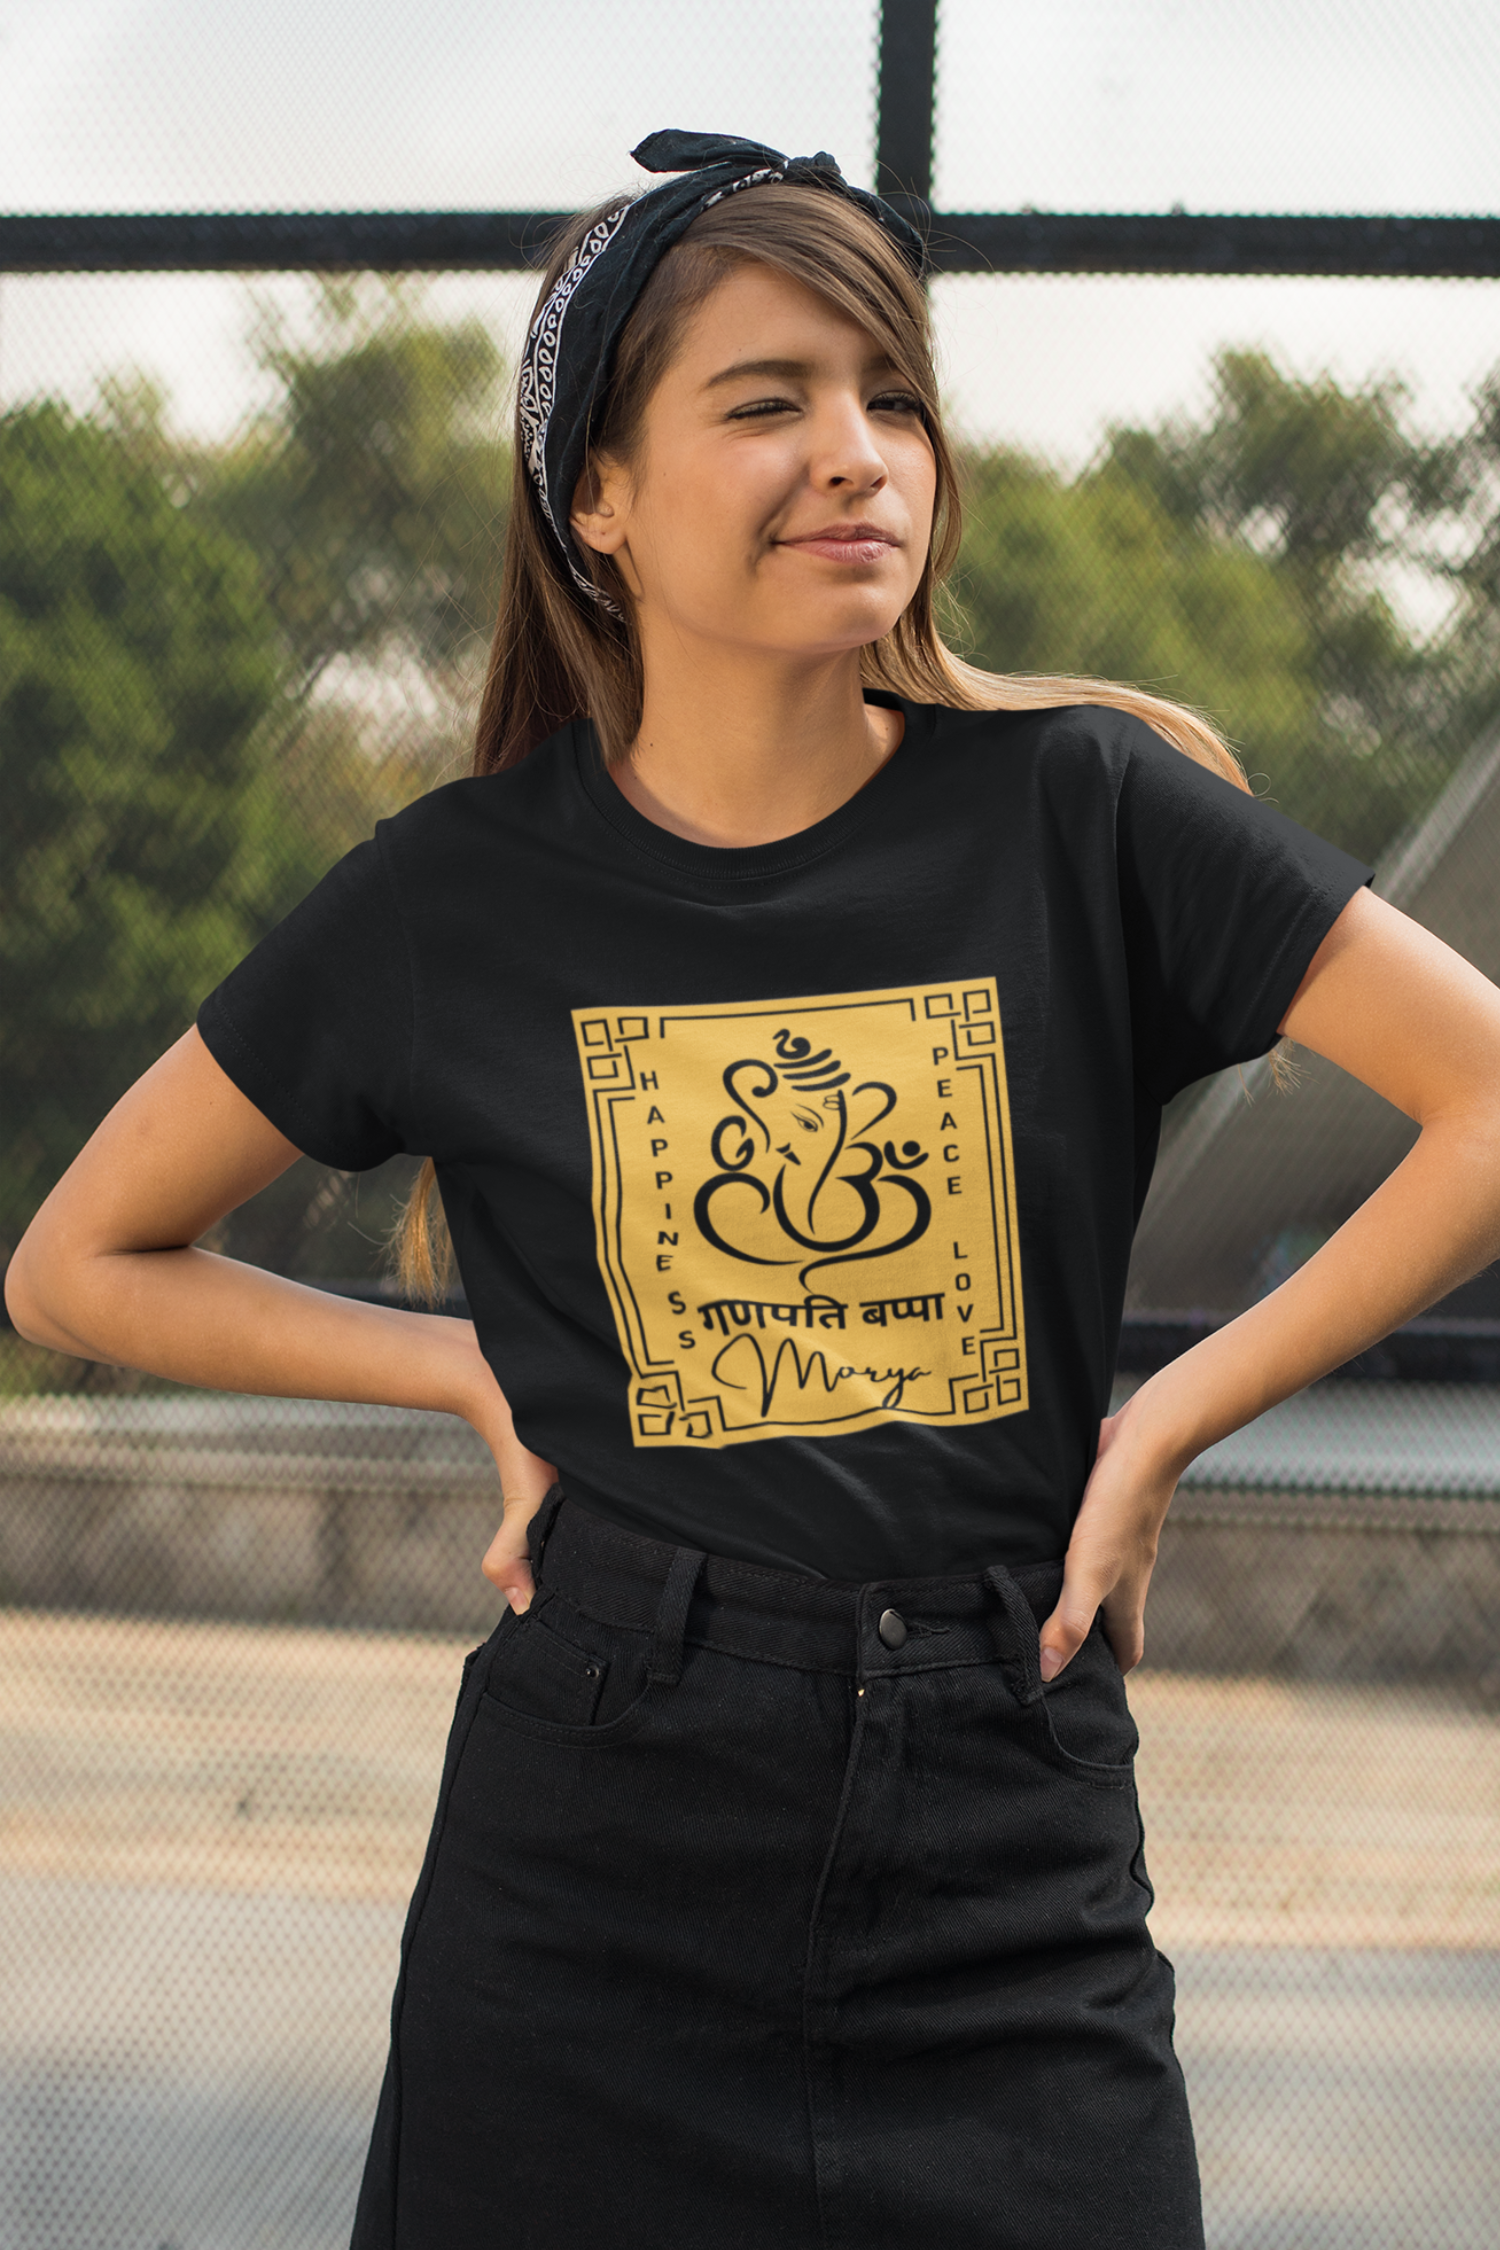 Ganpati Bappa Morya T-Shirt , Ganesh Chaturthi women's T-Shirt, Ganpati T-shirt 2022 - nautunkee